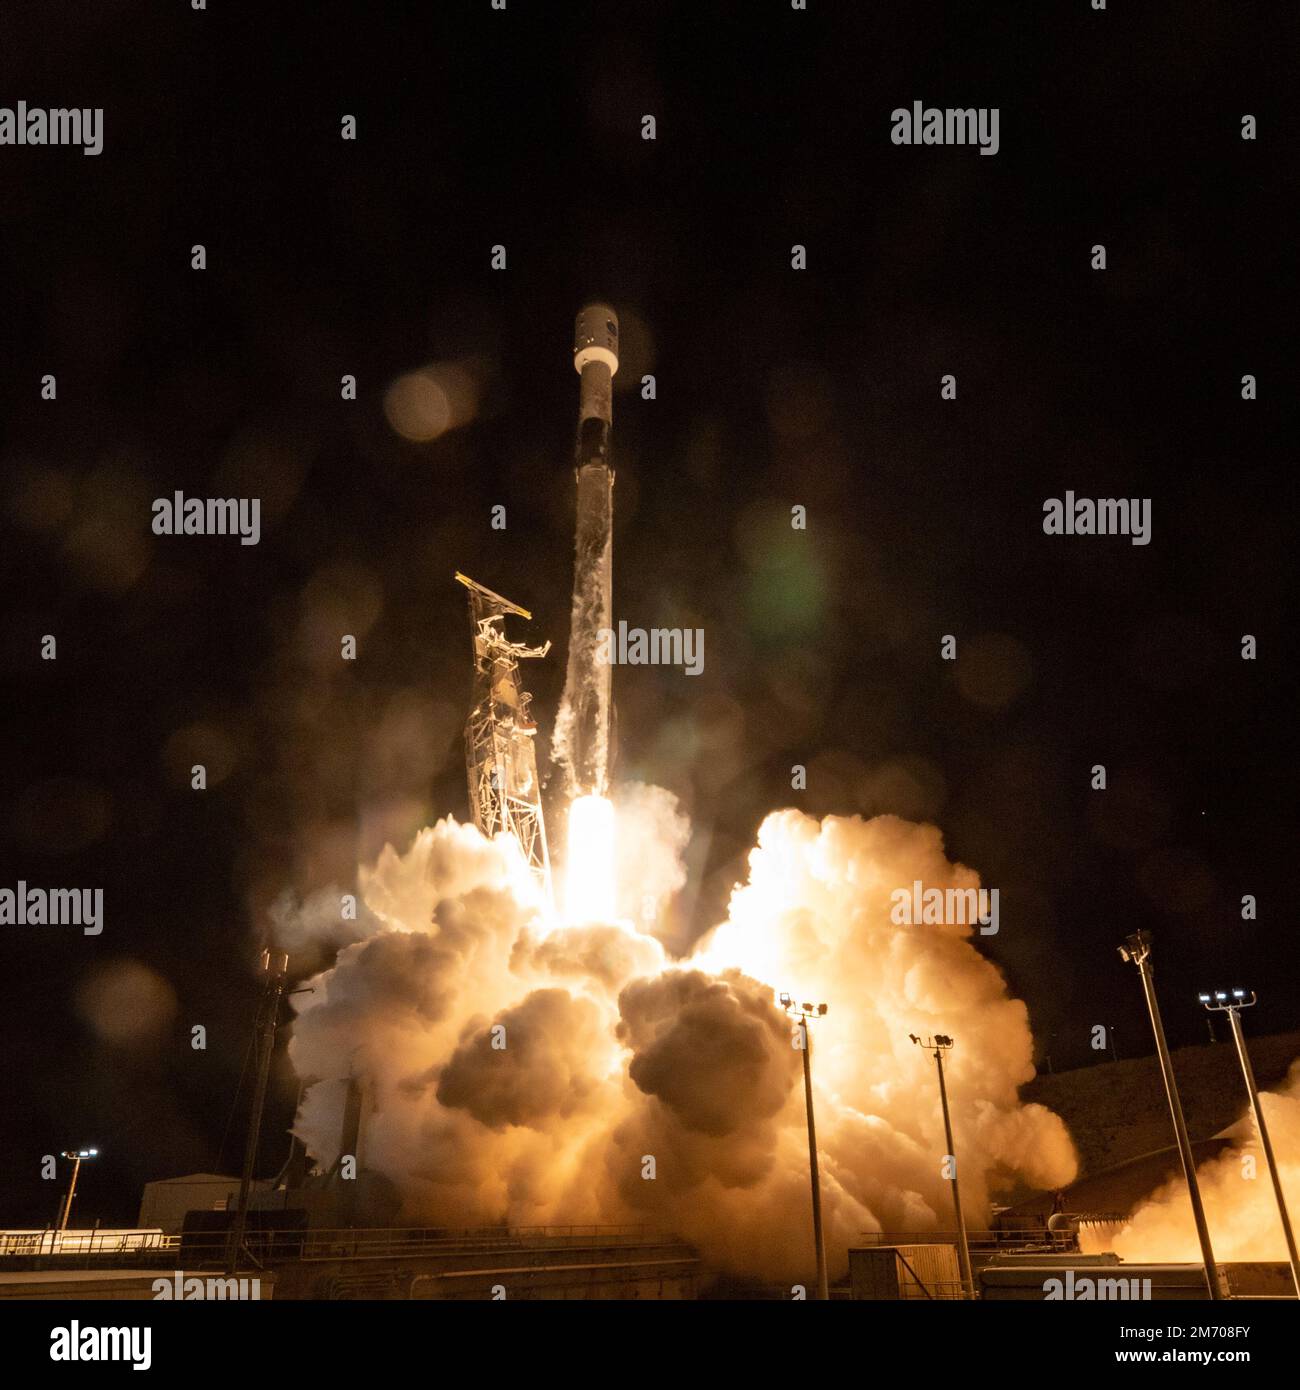 VANDENBURG SPACE FORCE BASE, KALIFORNIEN, USA - 18. Dezember 2022 - Eine SpaceX Falcon 9 Rakete startet mit dem Surface Water and Ocean Topography (SWOT) Stockfoto